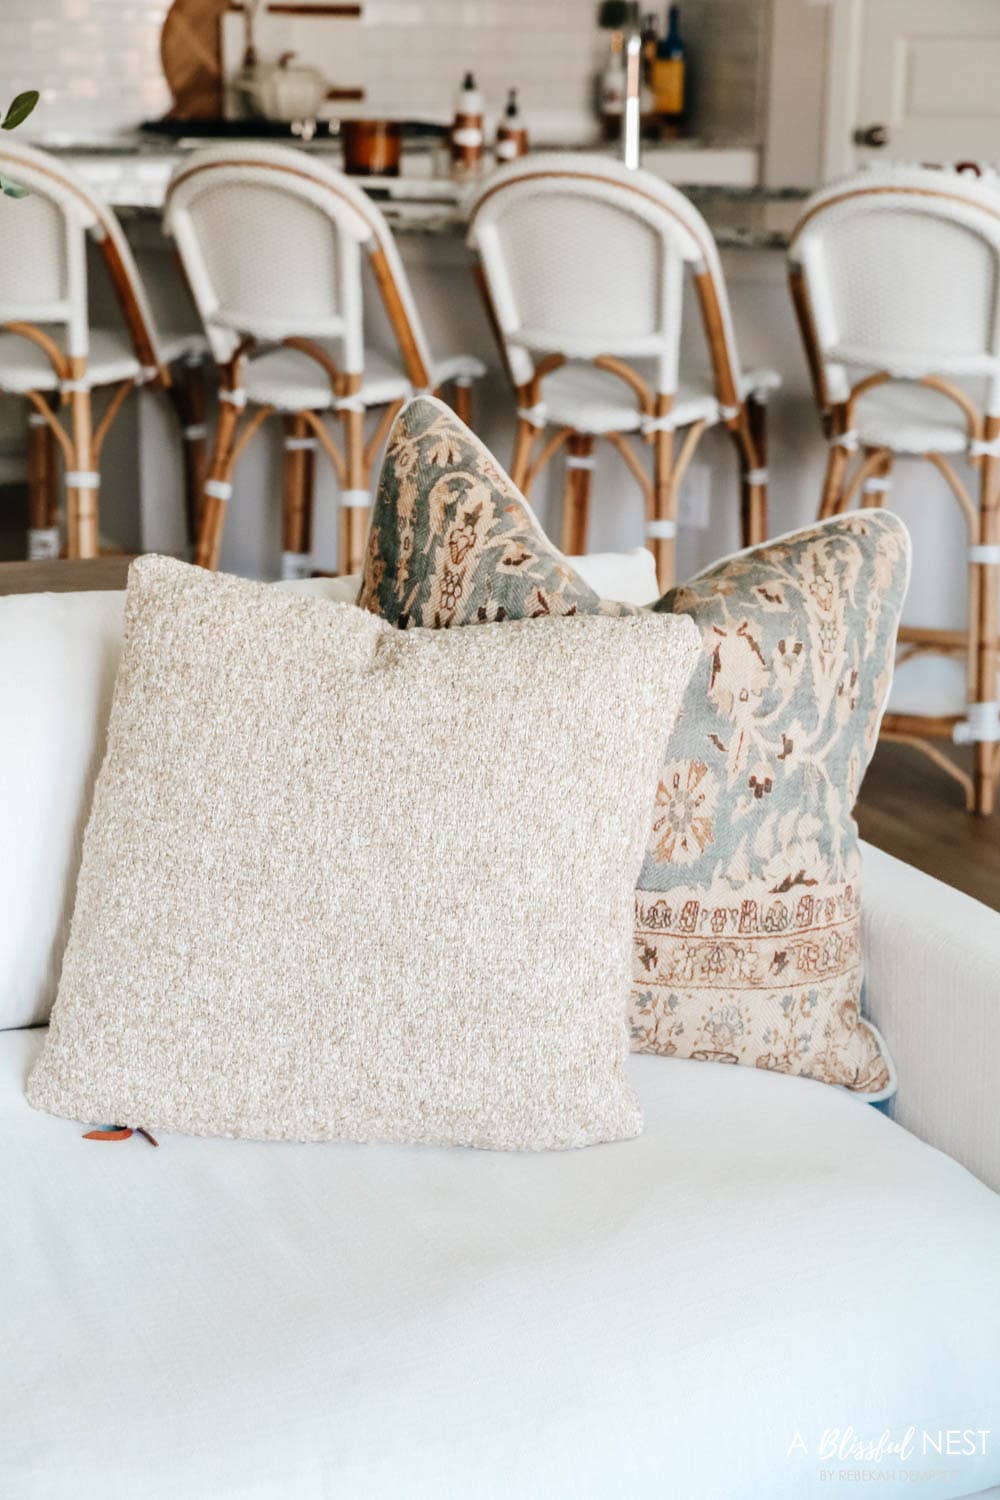 Fall hued pillows on a cream colored sofa